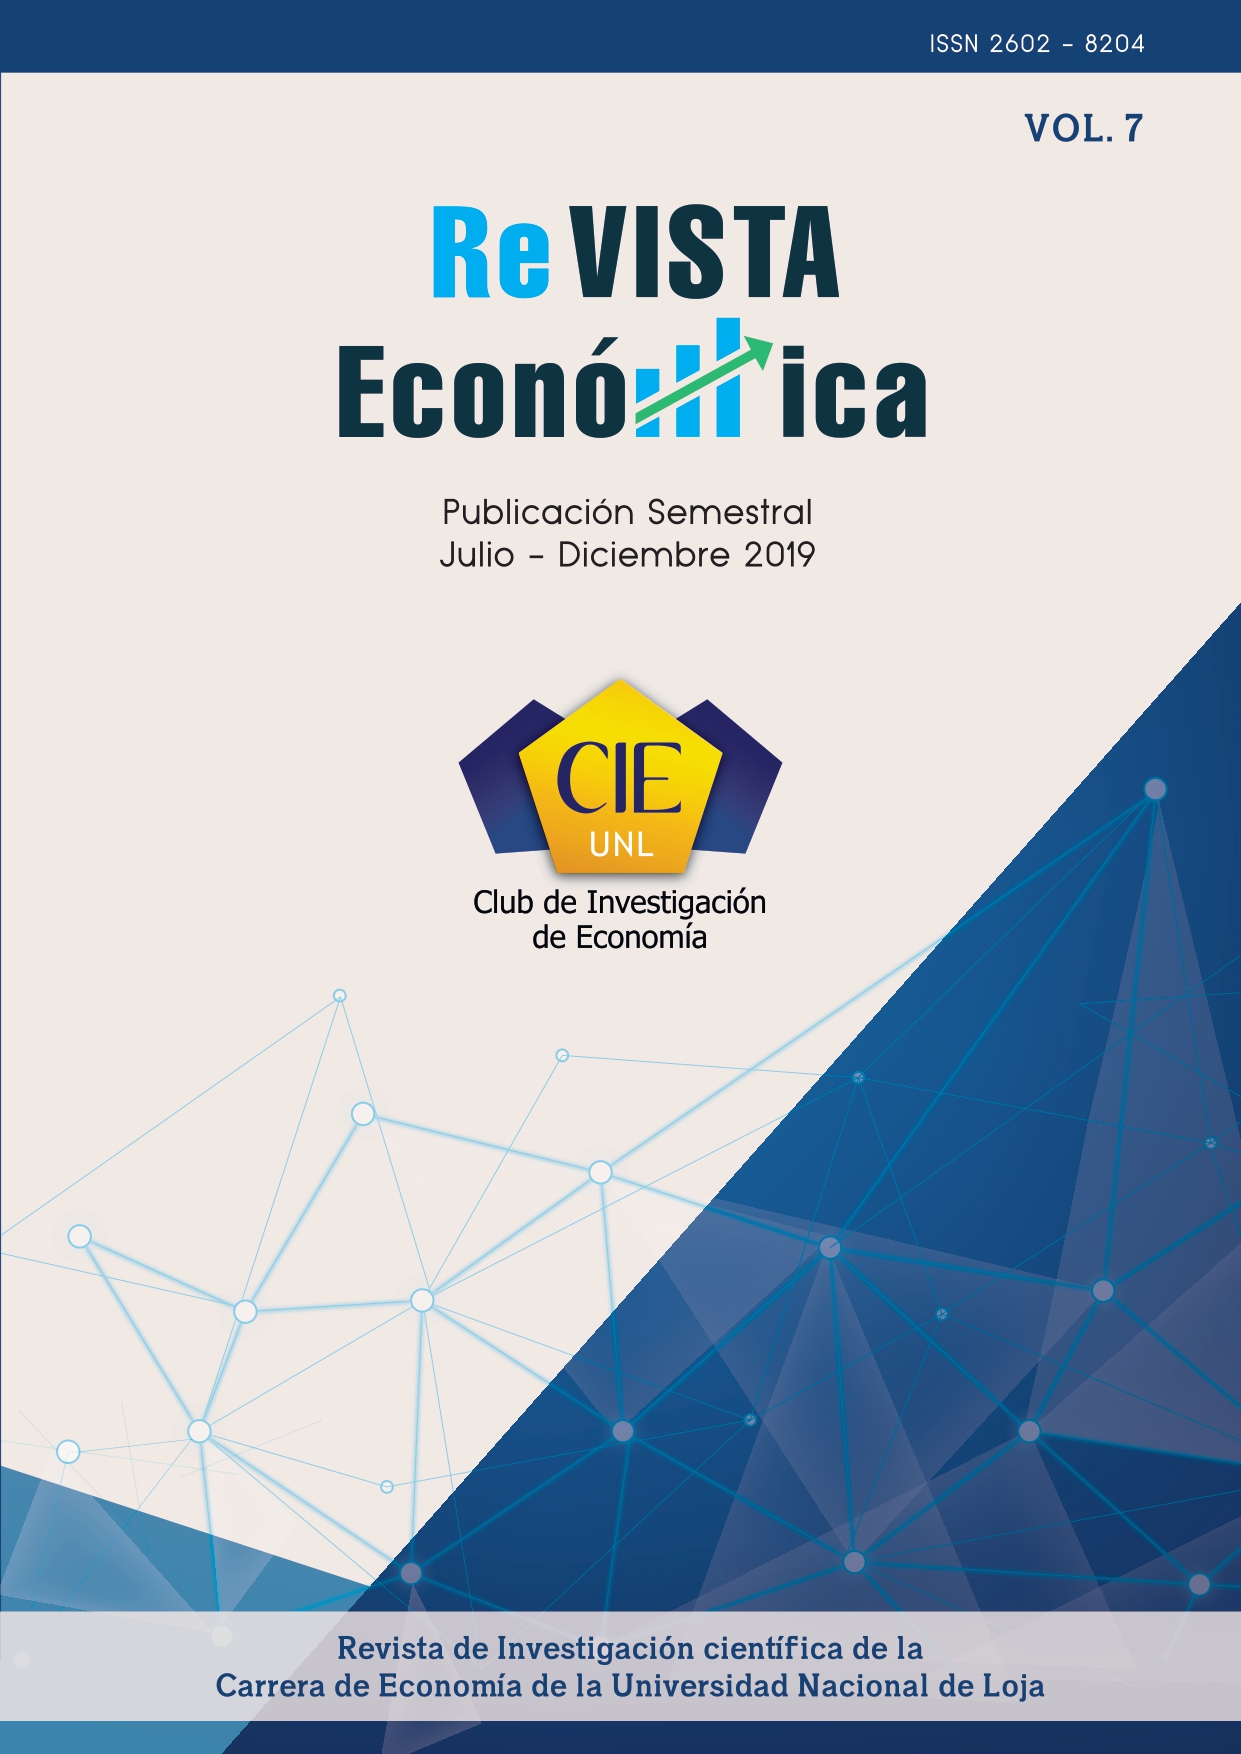 					Ver Vol. 7 Núm. 1 (2019): Revista Económica vol 7 (Julio-Diciembre 2019)
				